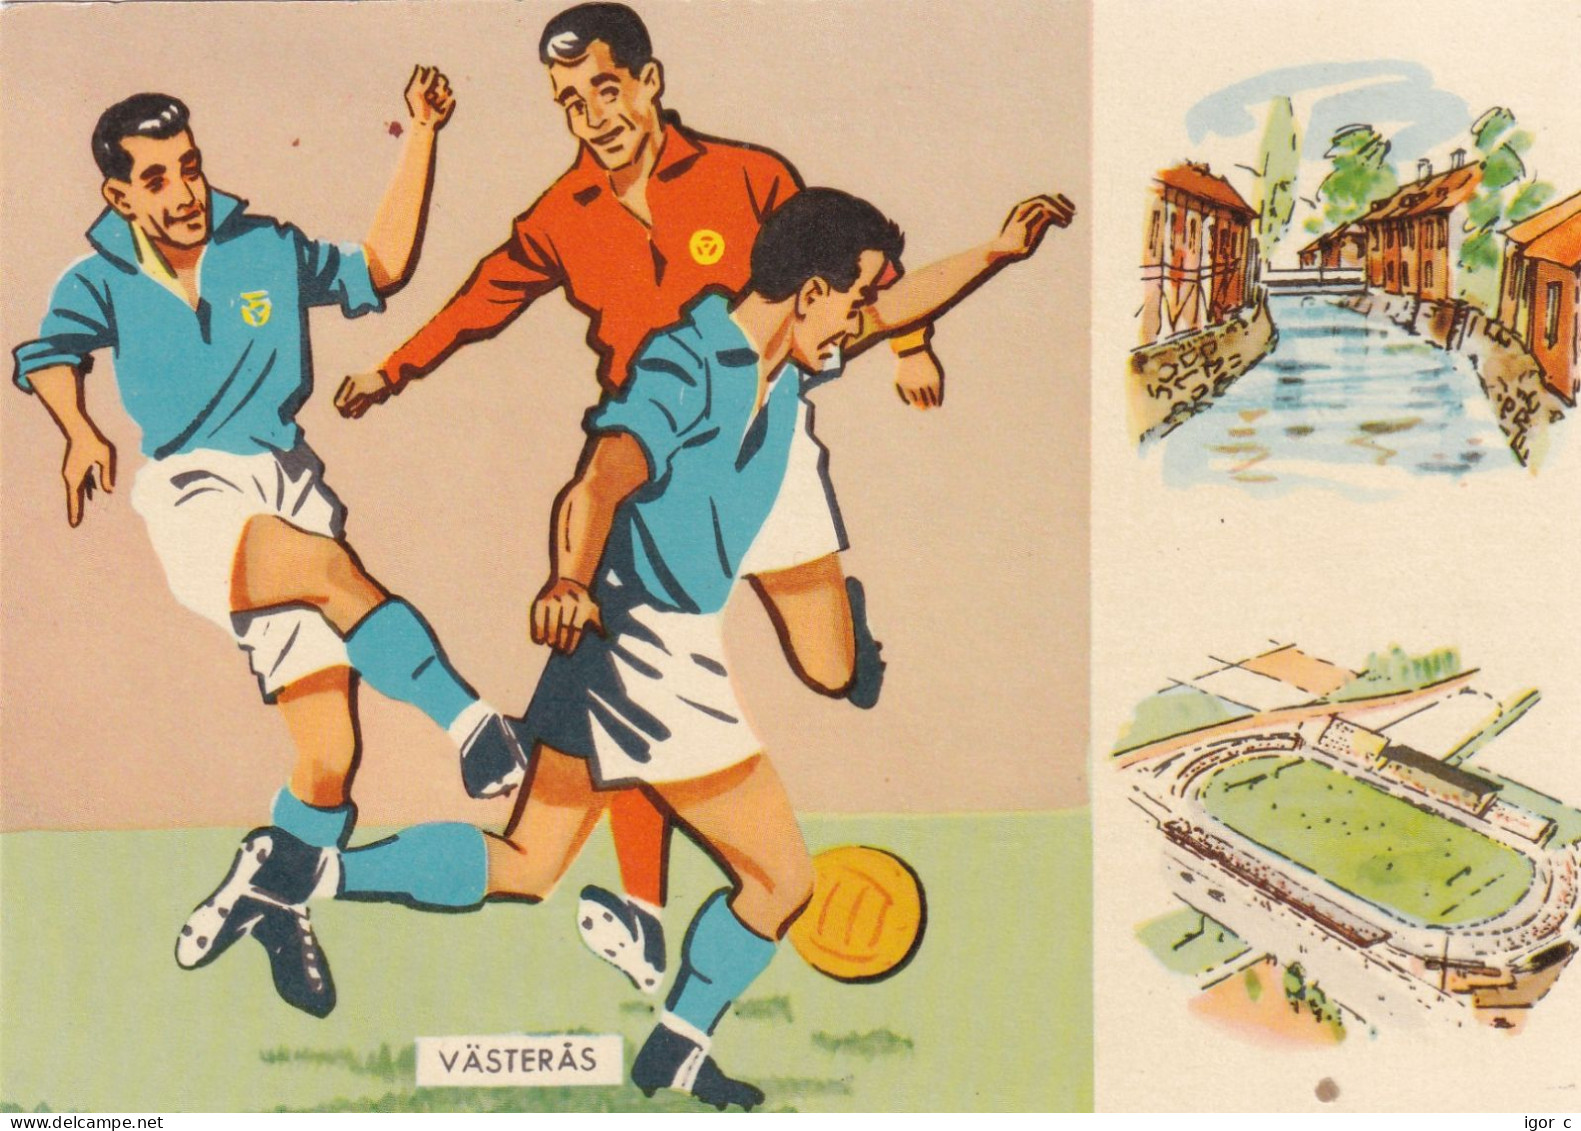 Sweden 1958 Card: Football Fussball Soccer Calcio; FIFA WC 1958 Sweden; France - Yugoslavia Match - 1958 – Schweden